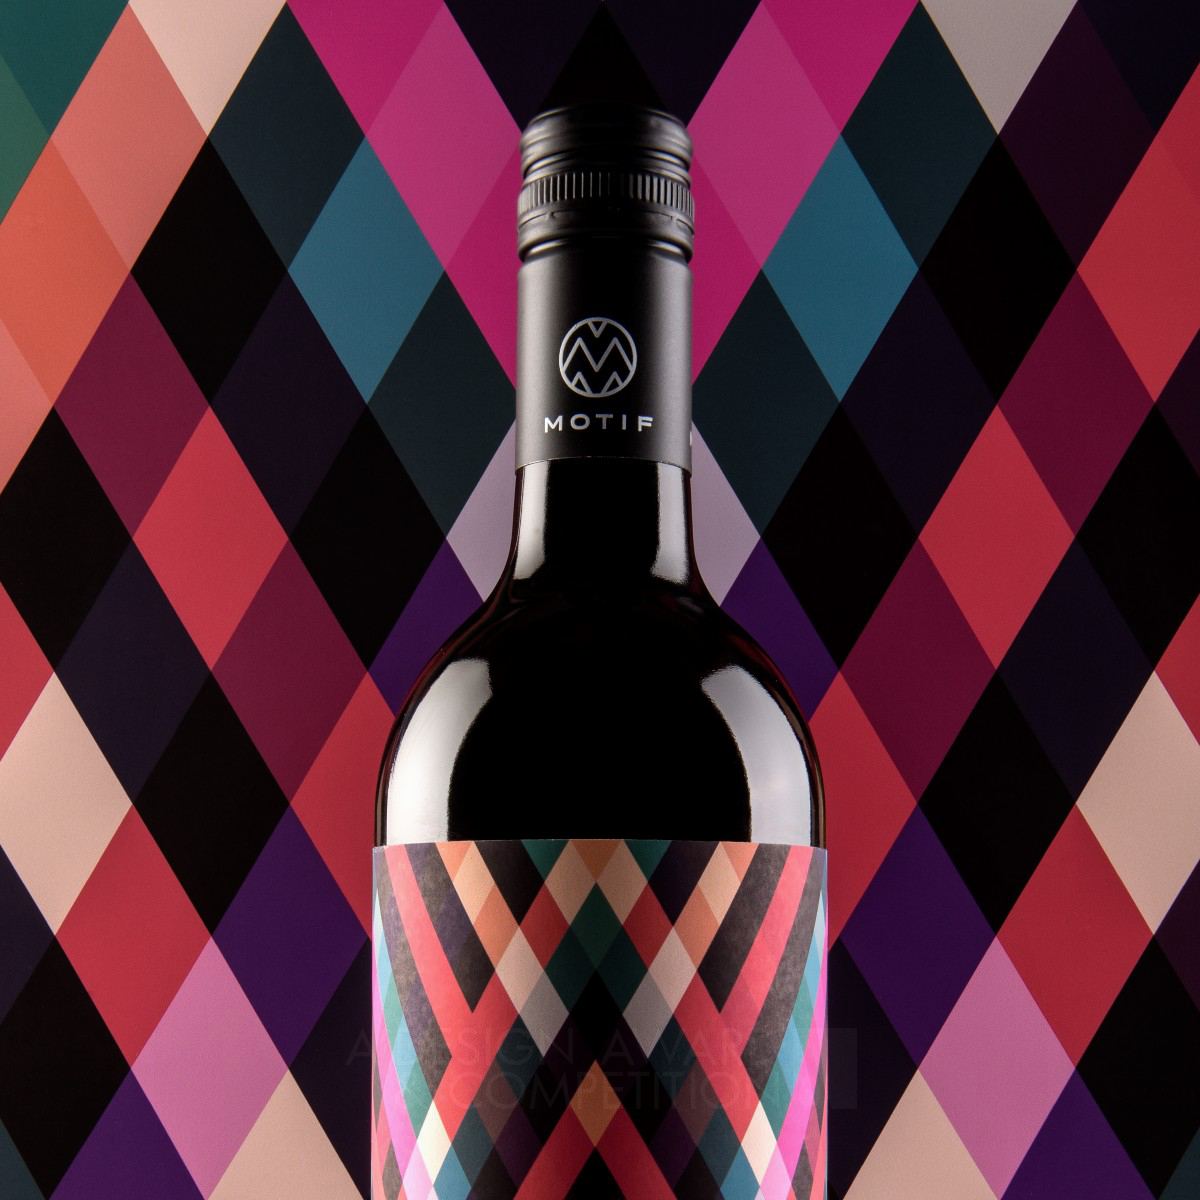 Motif Wine Wine Packaging Design